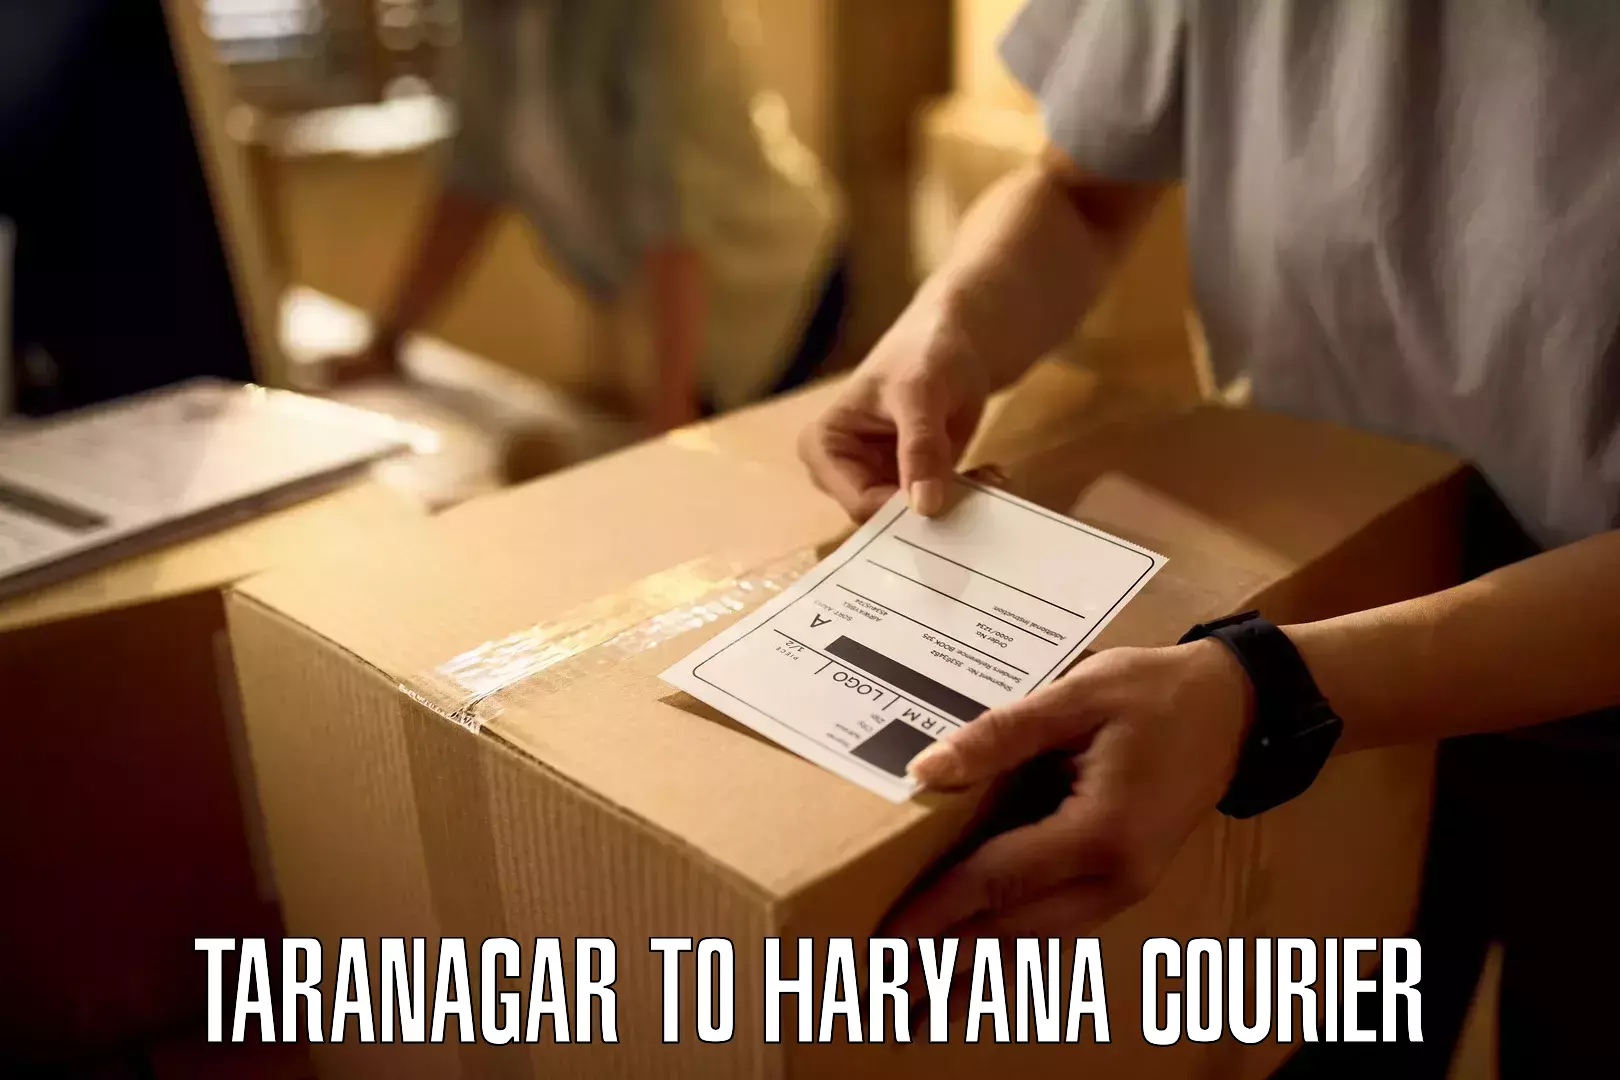 Door-to-door freight service Taranagar to Haryana